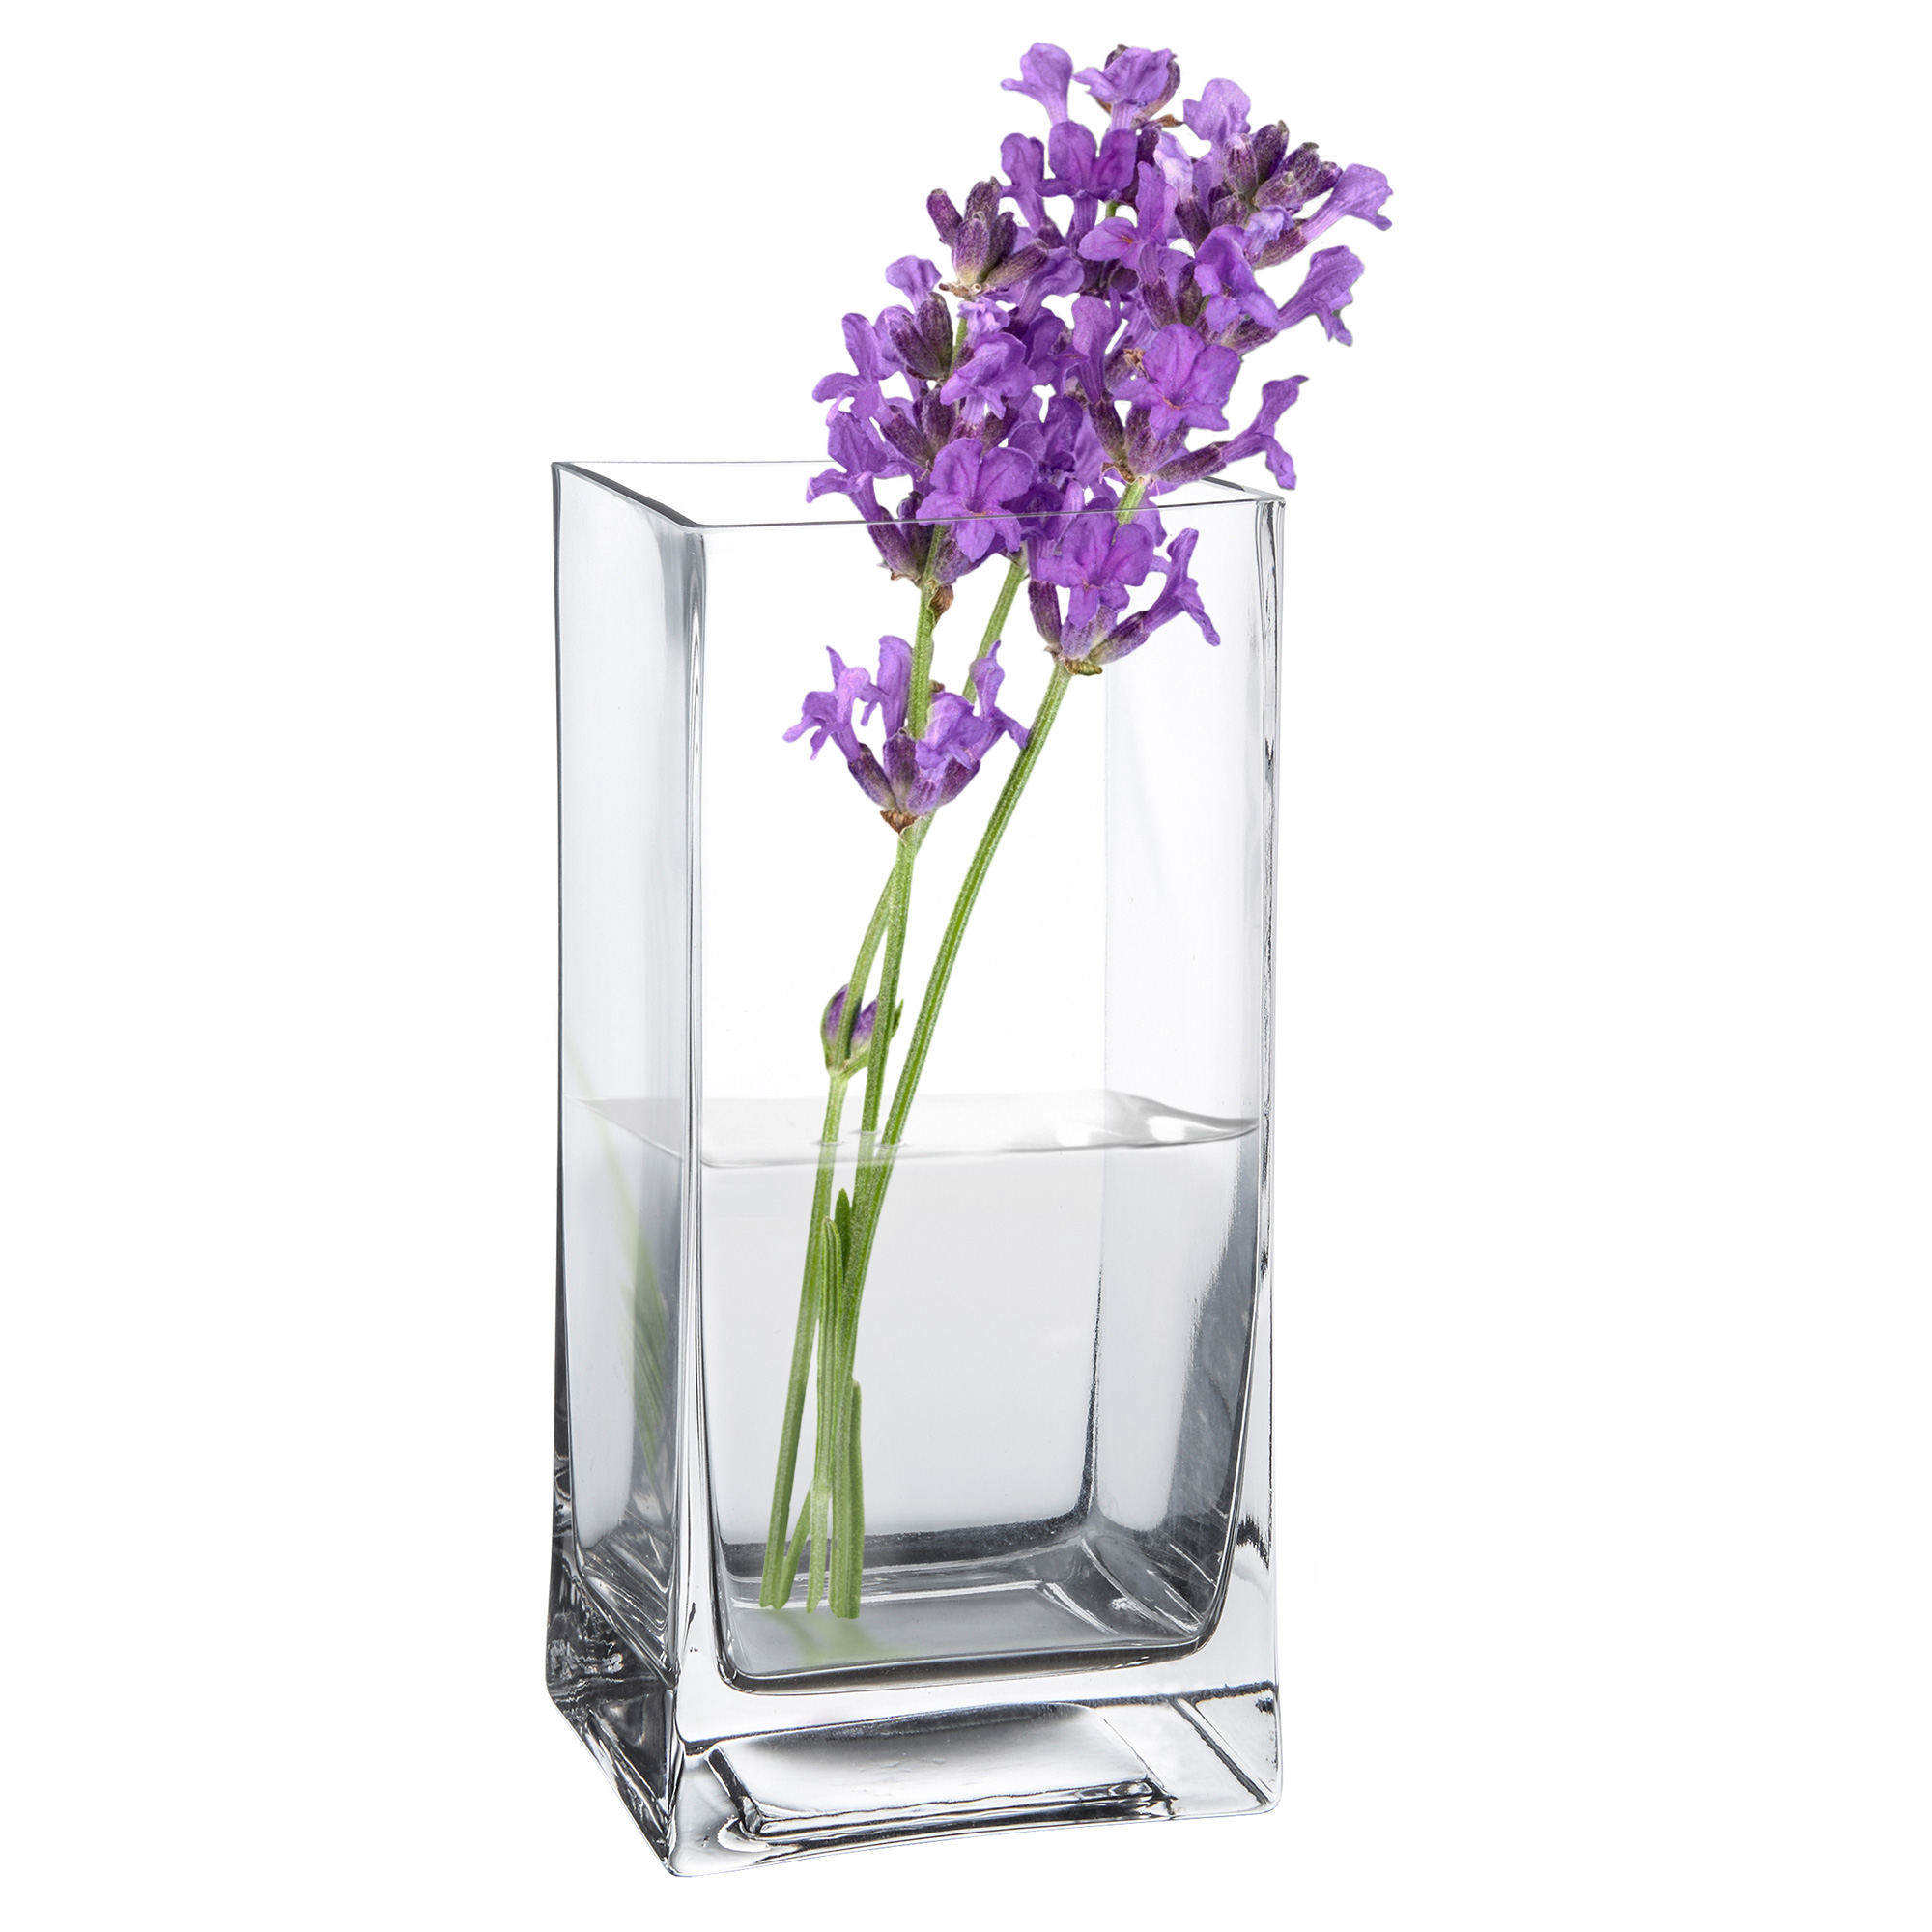 Eckige Vase - Glas Blumenvase 0006-0019-EU-0000 - 5